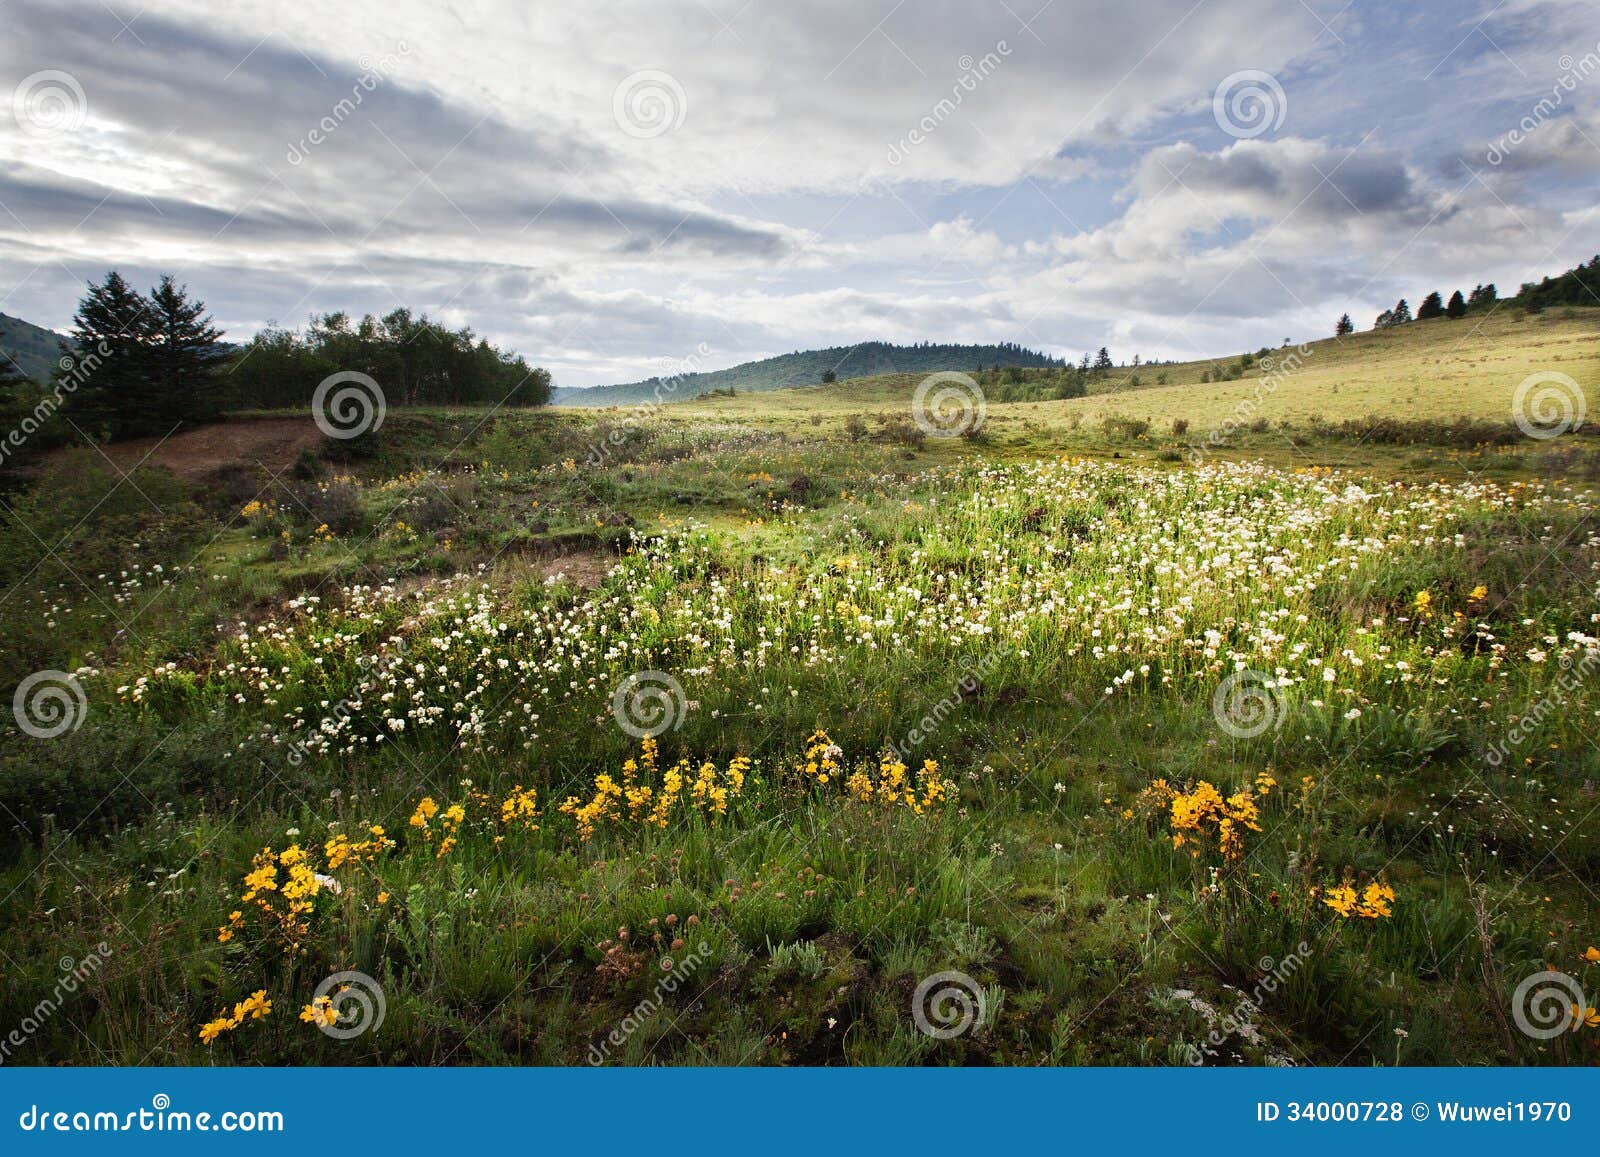 tibetan alpine grassland